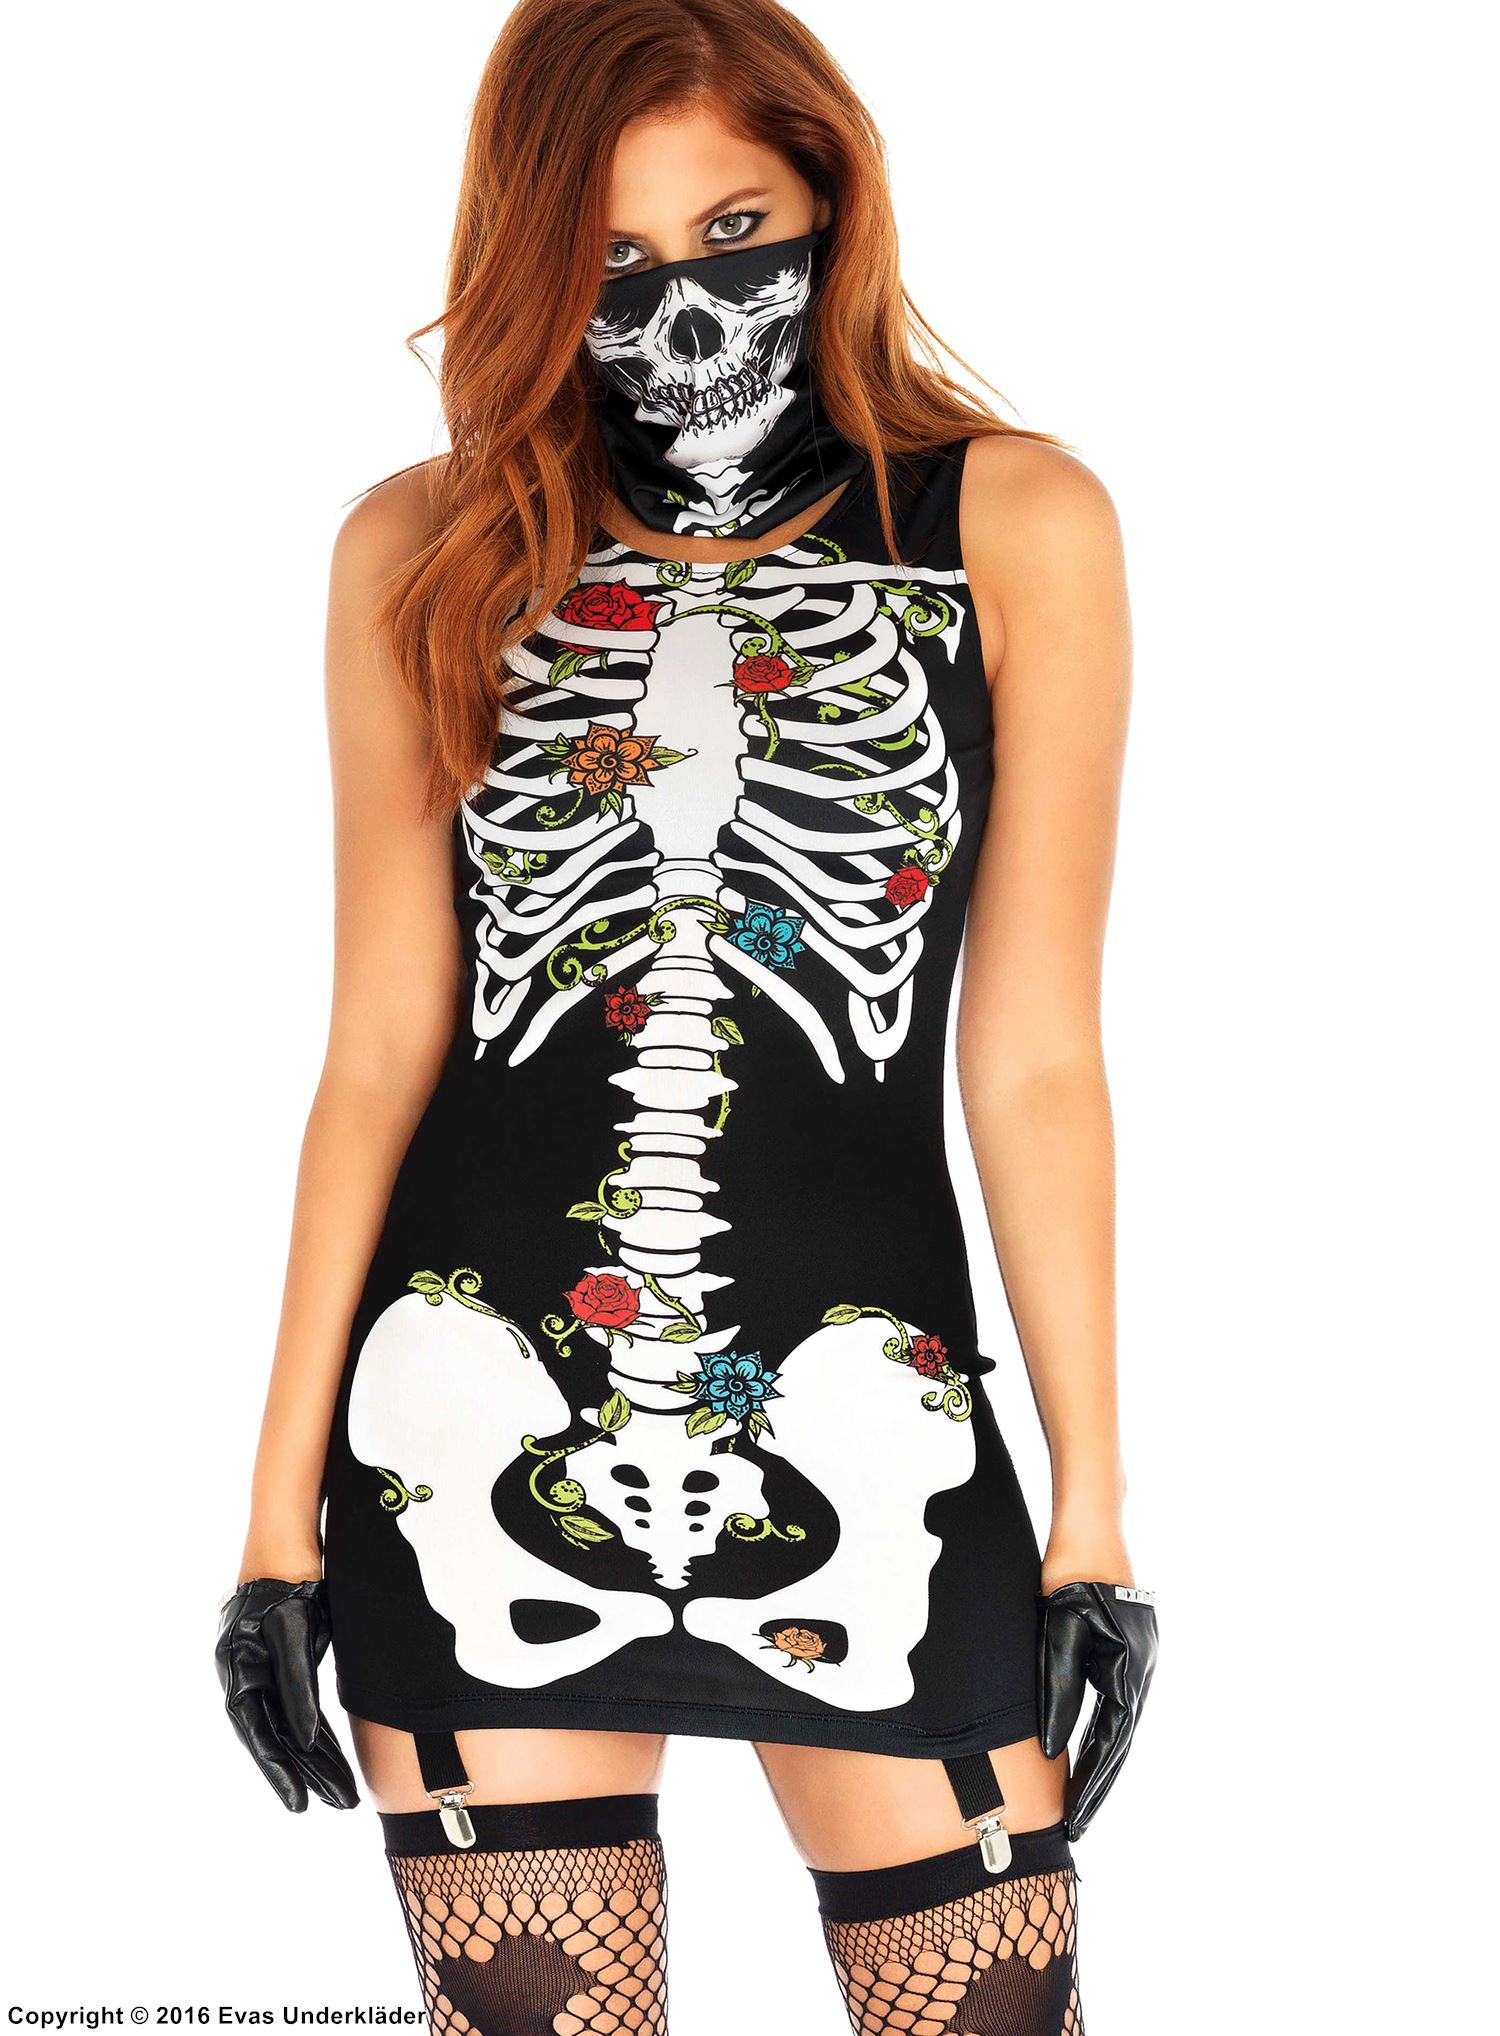 Minikleid, glatte Rückseite, eingebauter Strumpfbandgurte, Rosen, Skeleton